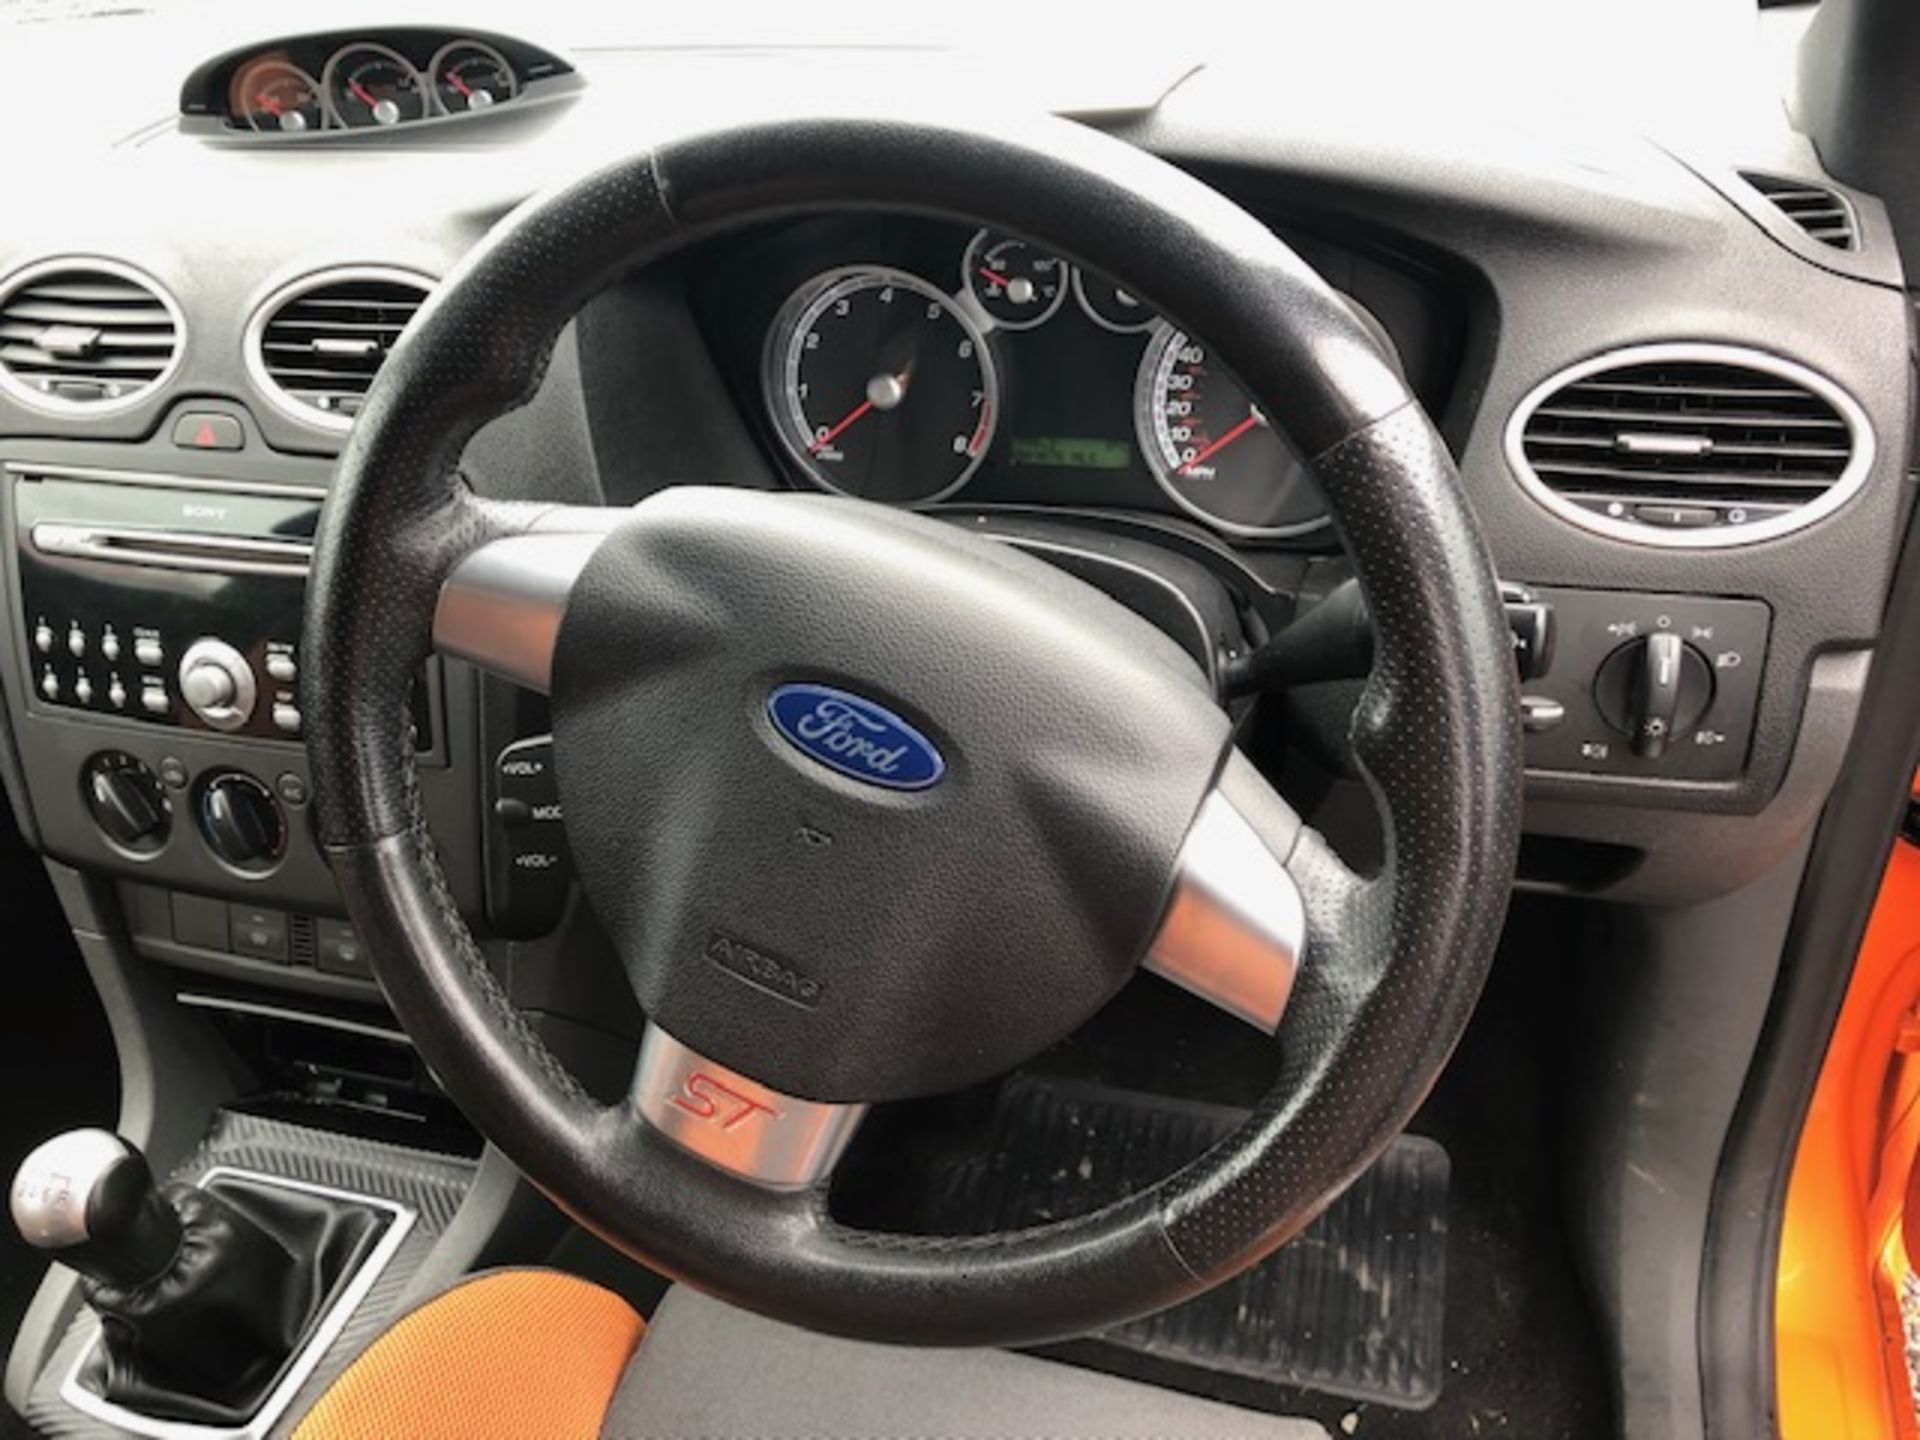 Ford Focus ST-2 3 Door Hatchback | Reg: CE06 WBD | 49,876 Miles - Image 9 of 12